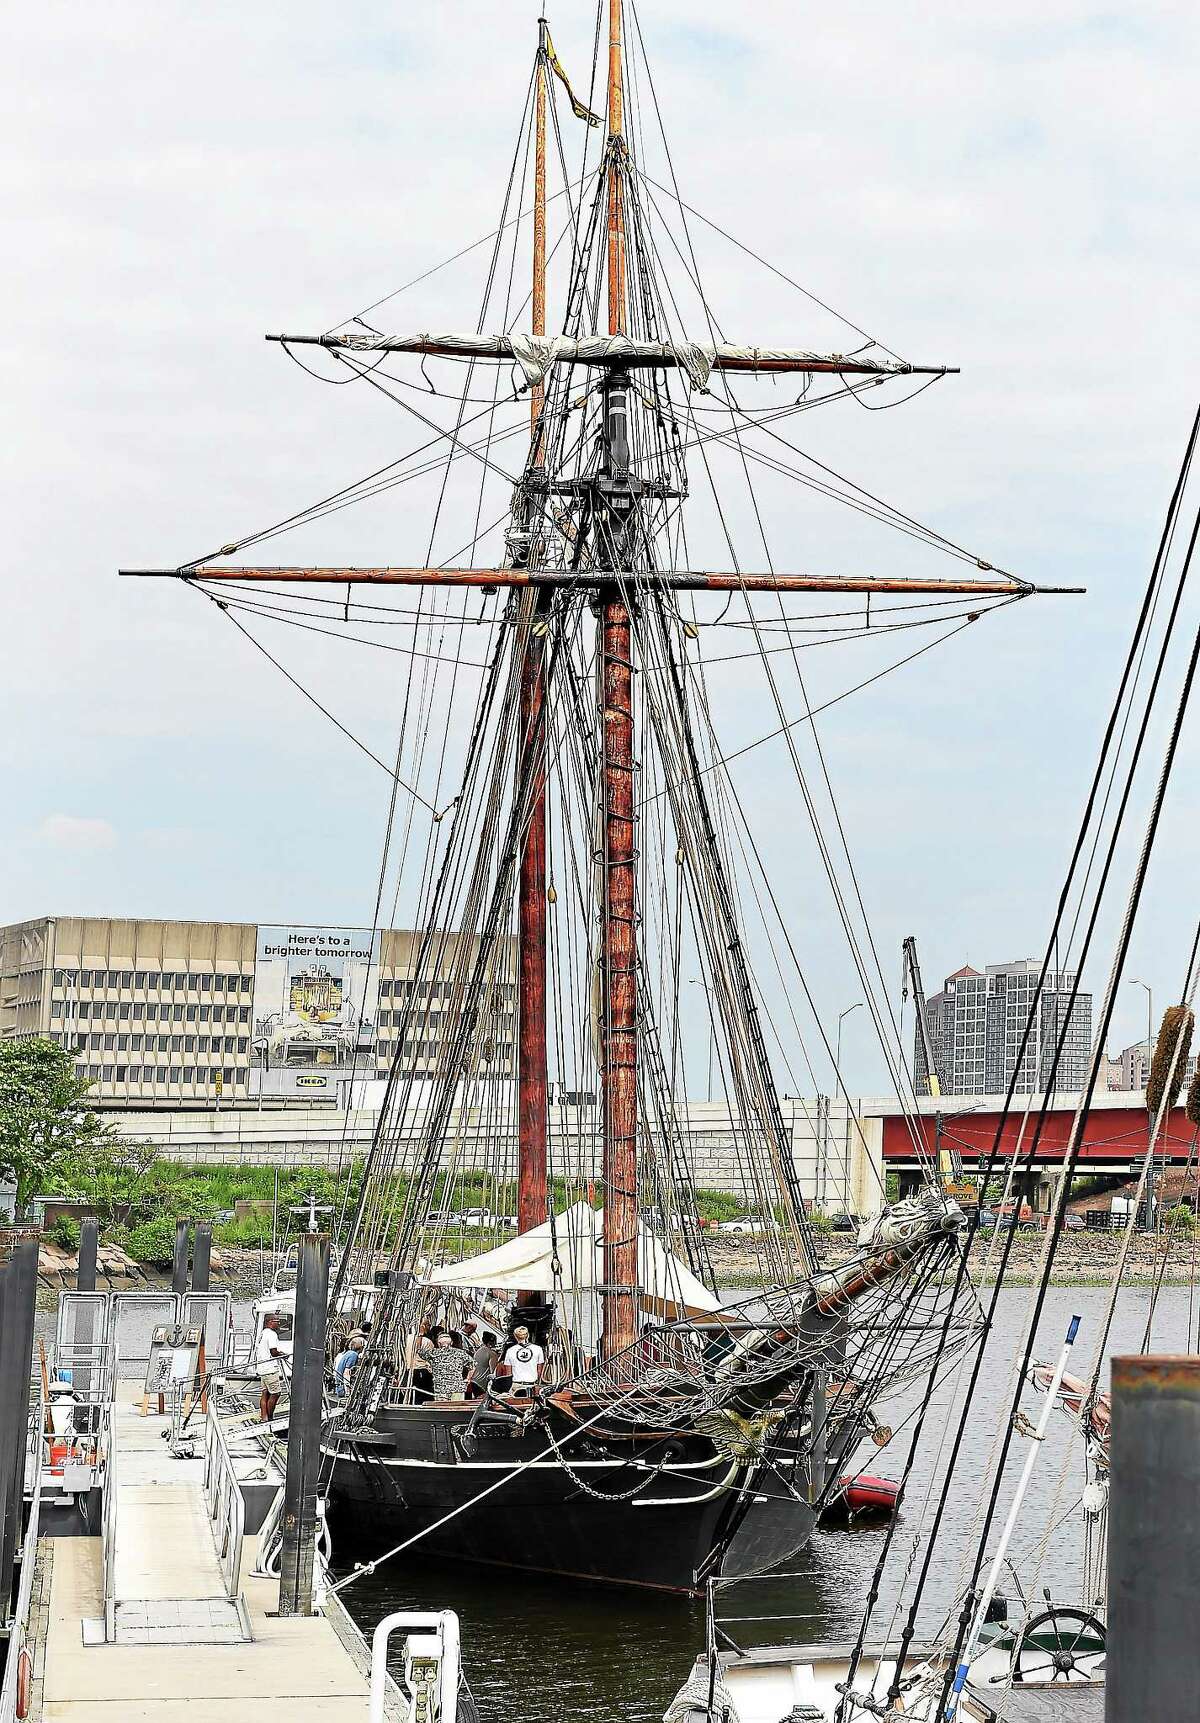 The Freedom Schooner Amistad, docked in New Haven Harbor July 2.